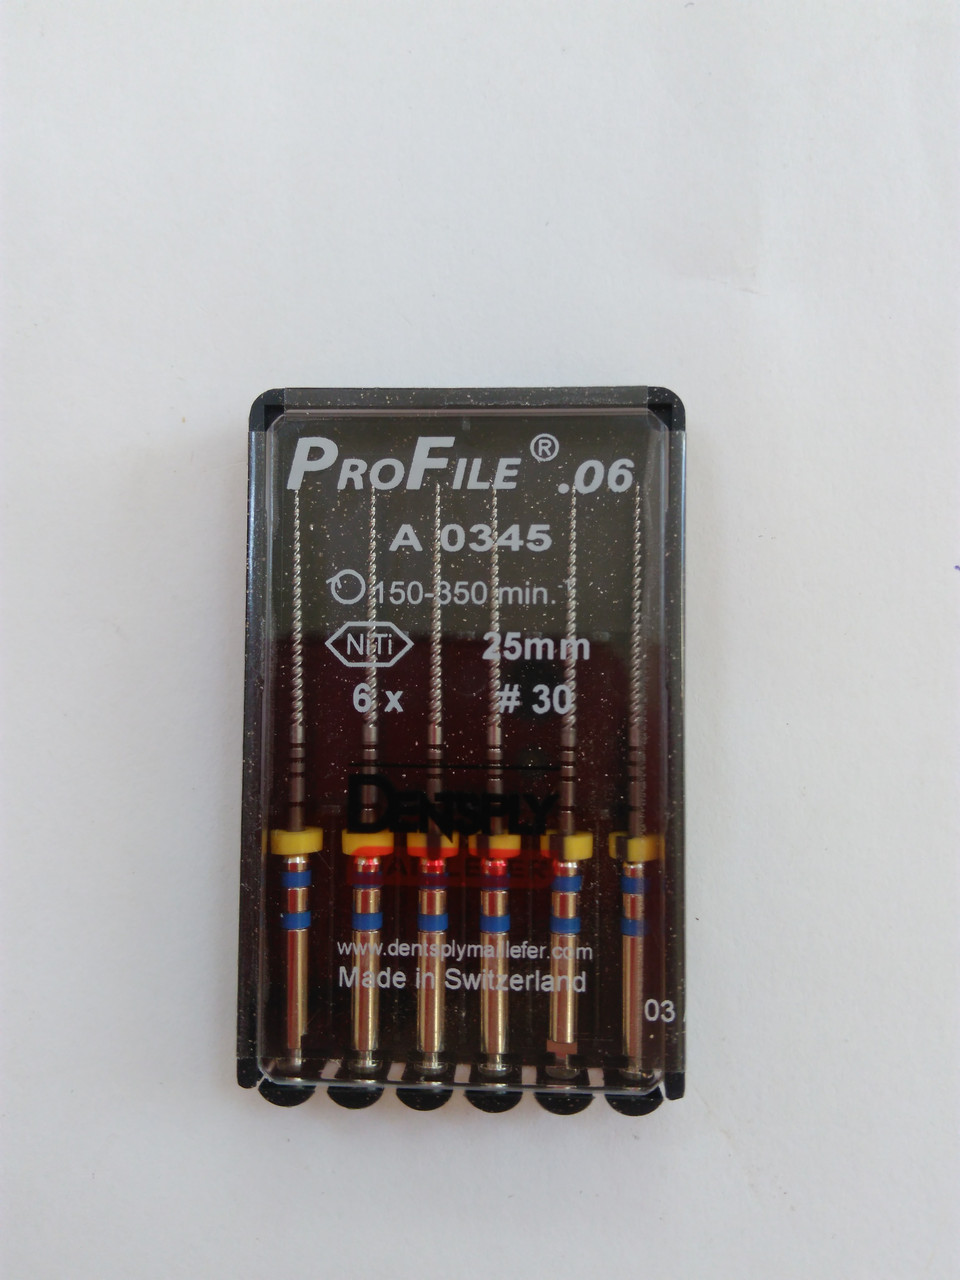 ПроФайли (ProFile®) 0.6, 25 мм розмір 30, 6 шт.  